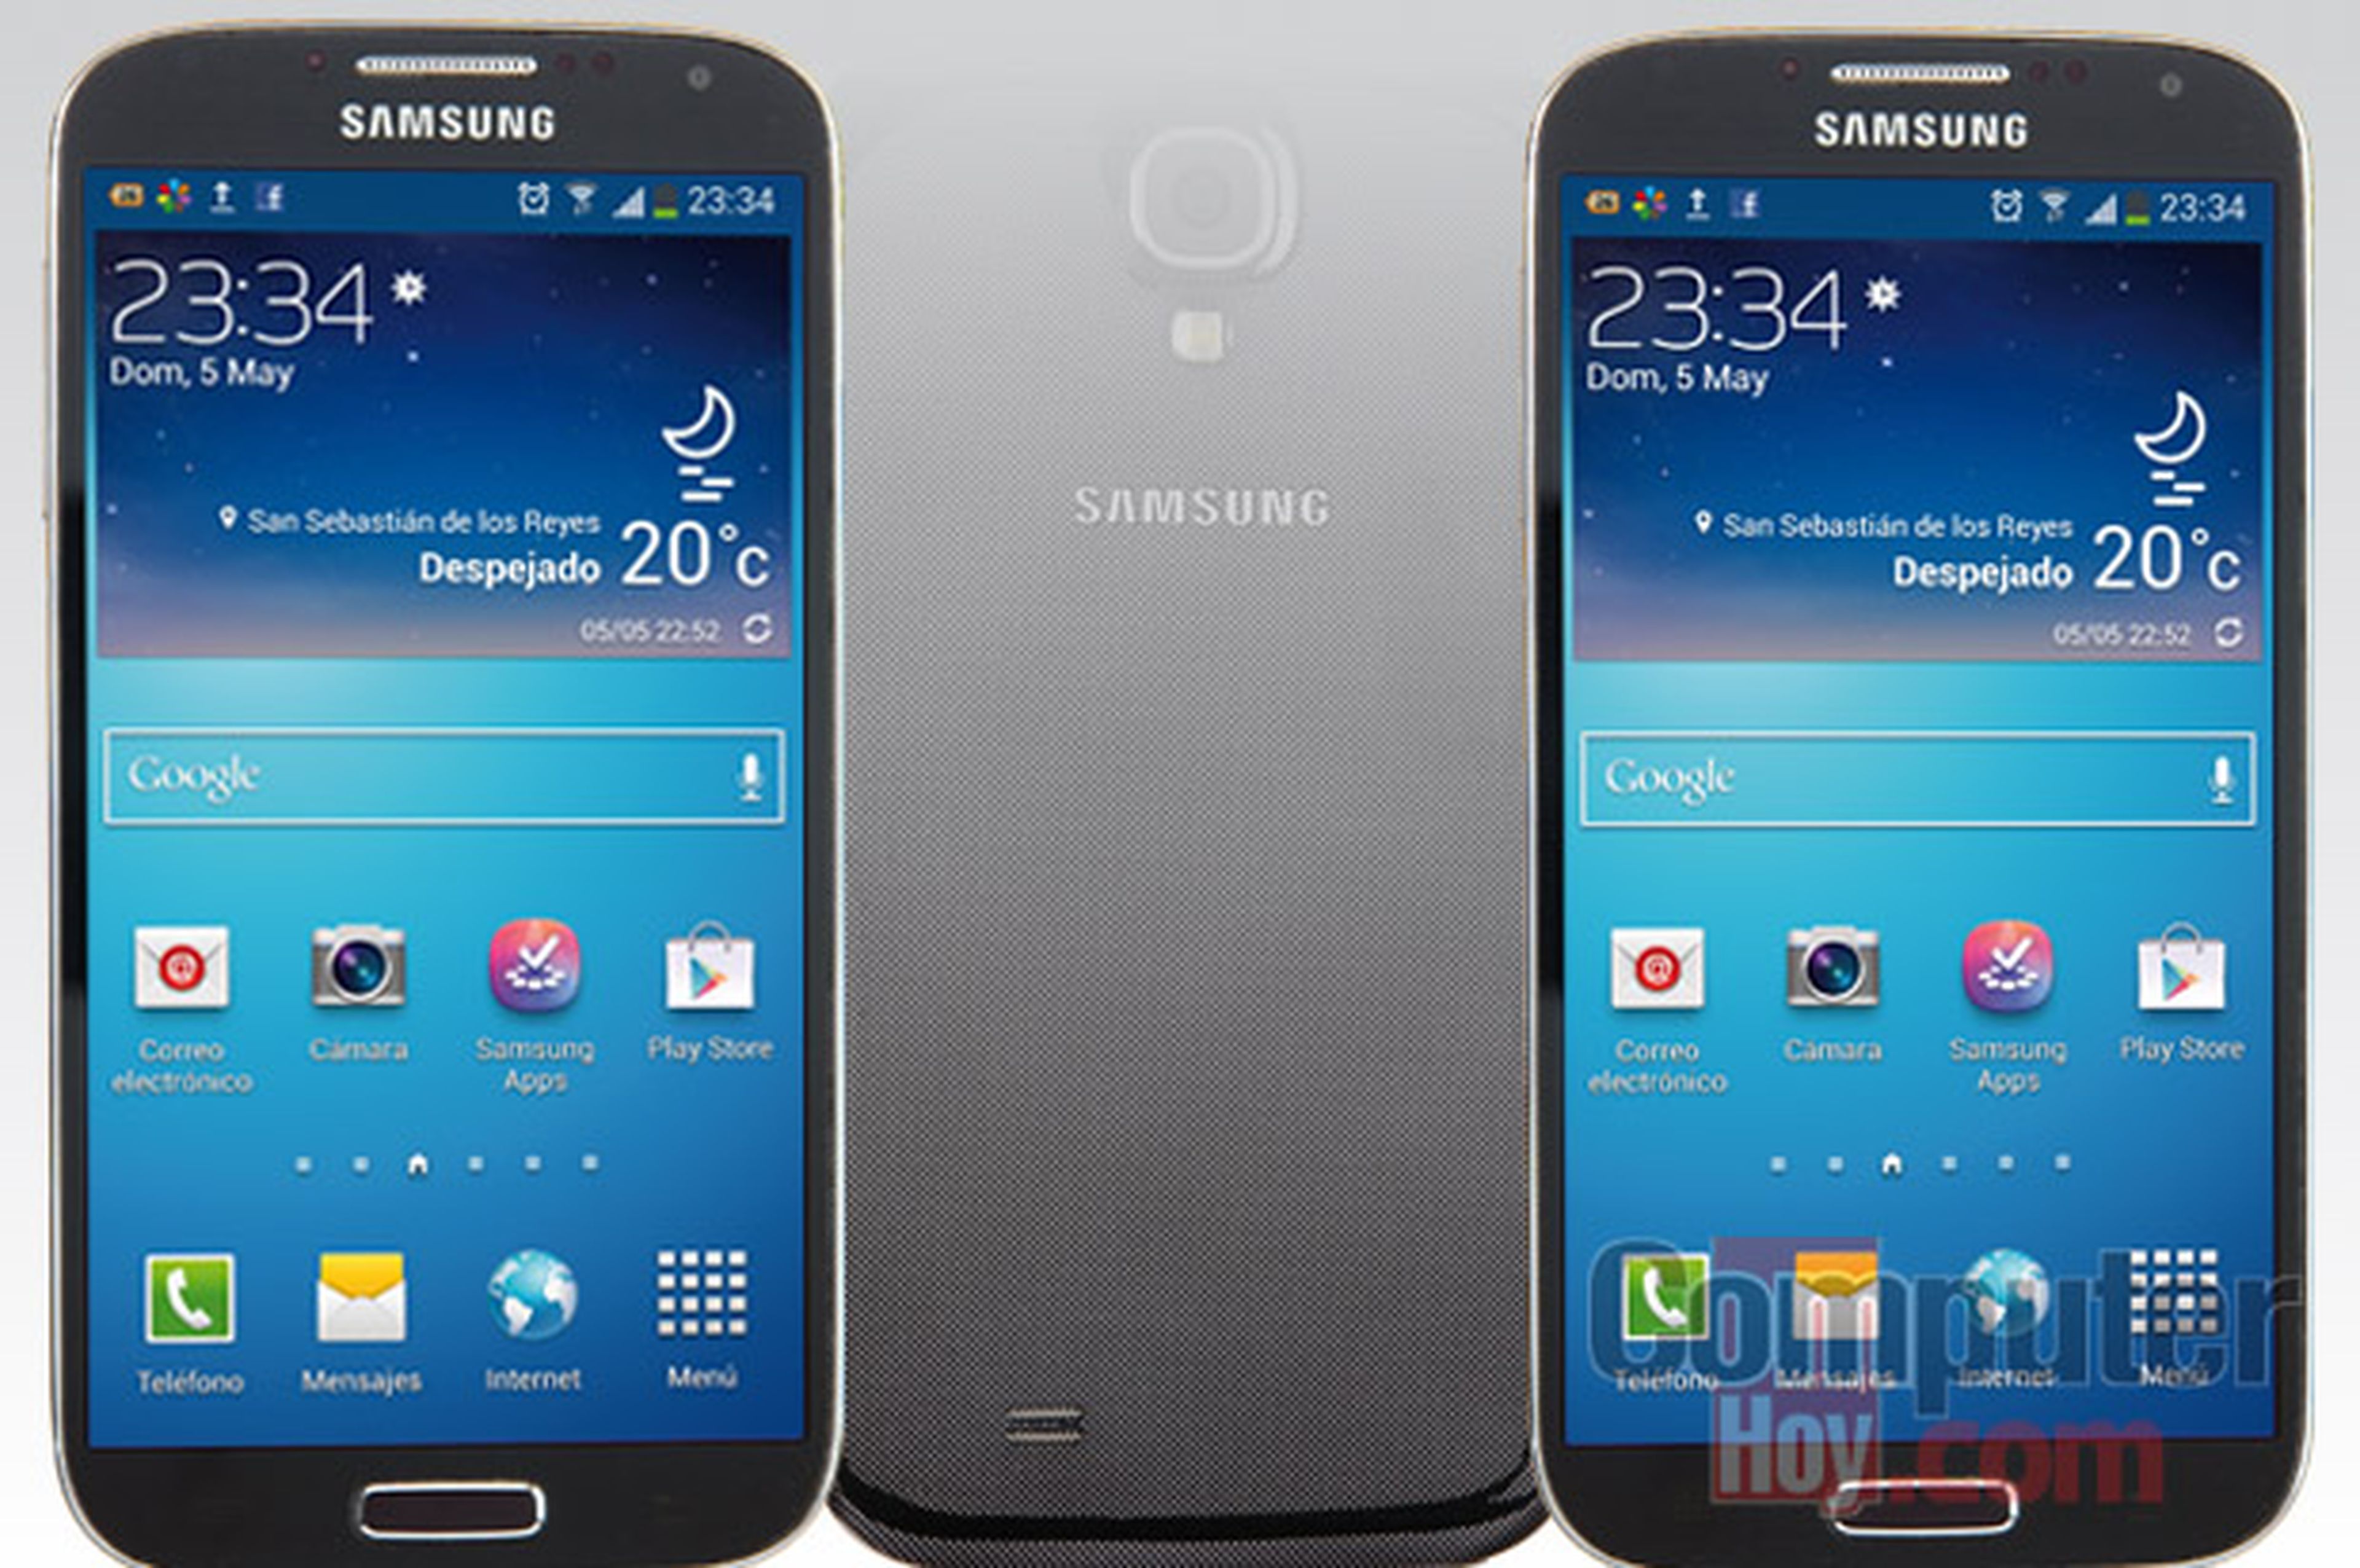 Análisis del Samsung Galaxy S4: características y funciones